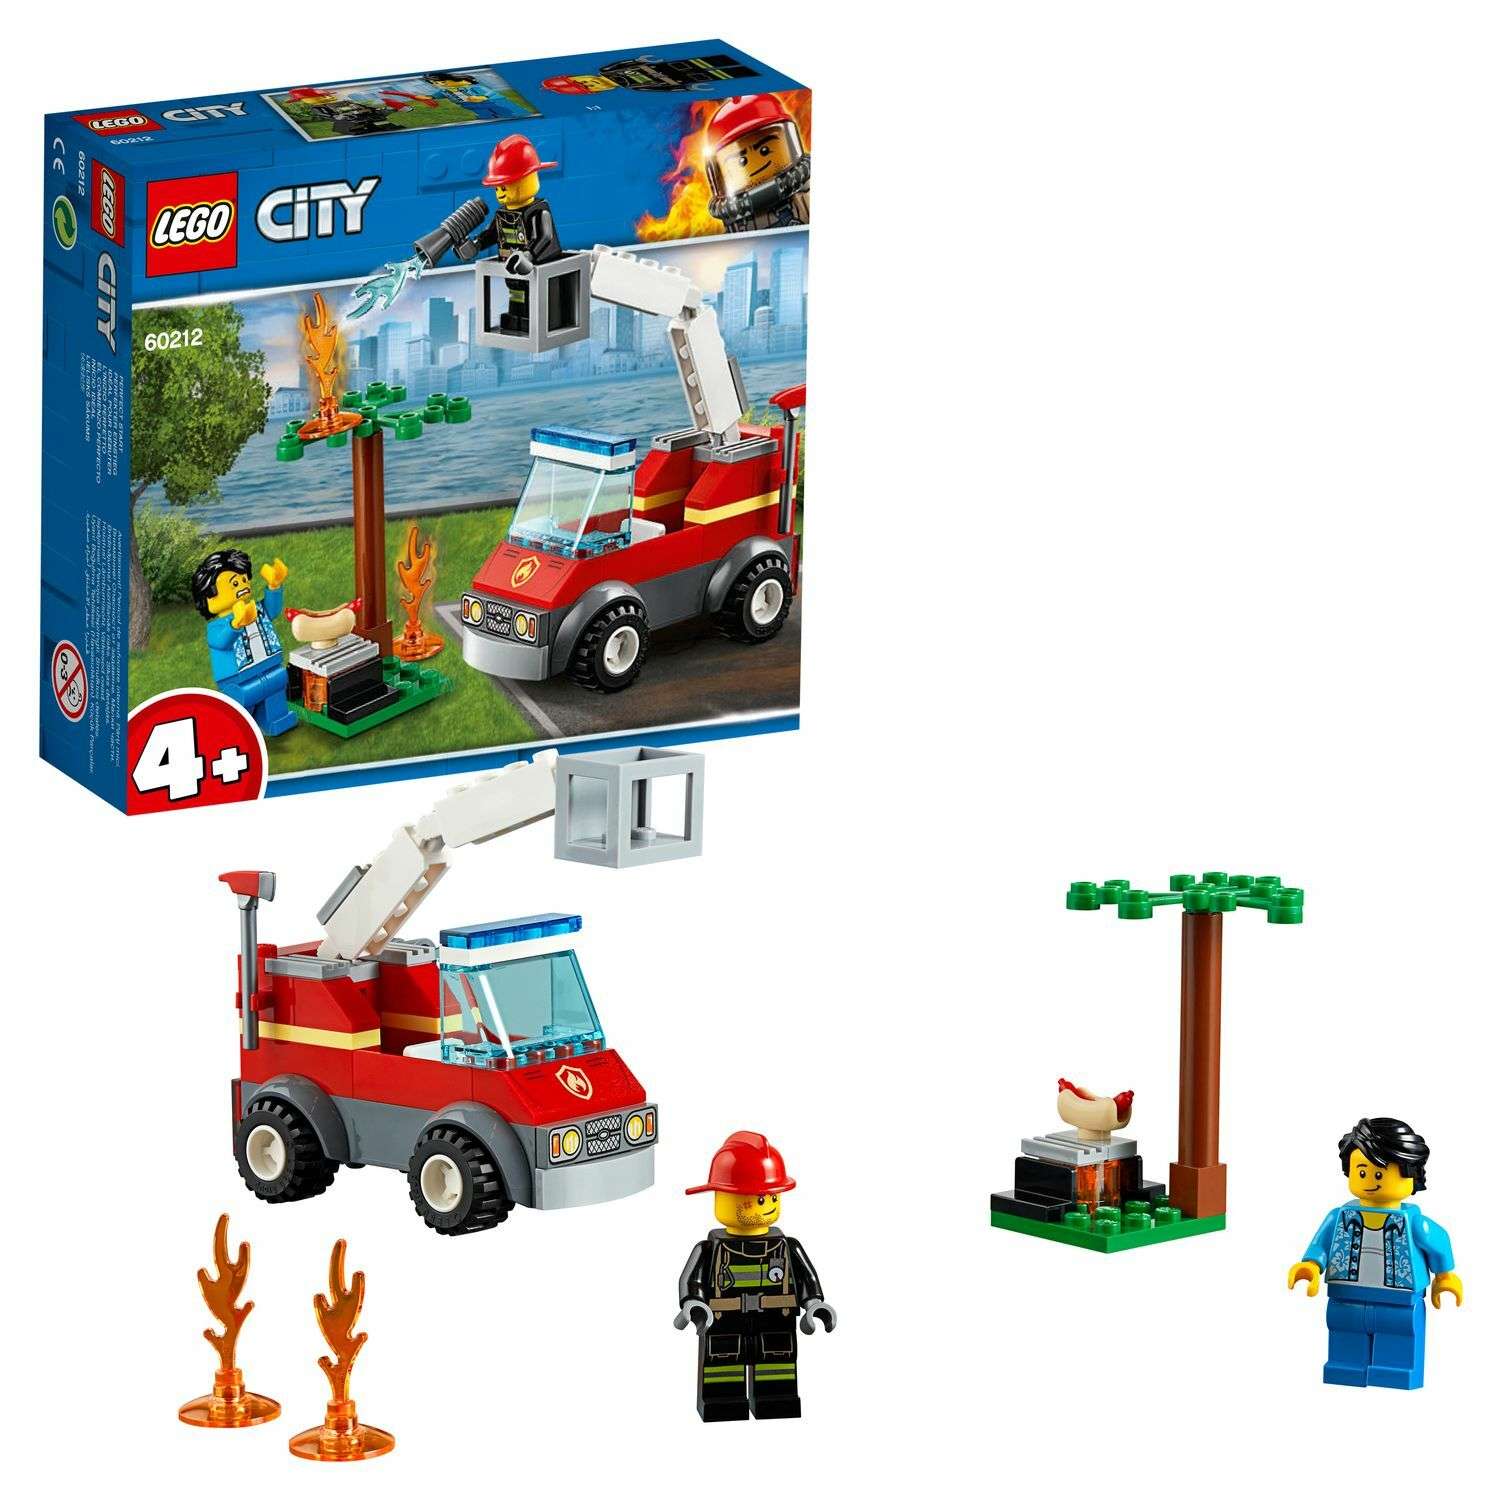 Конструктор LEGO City Fire Пожар на пикнике 60212 - фото 1